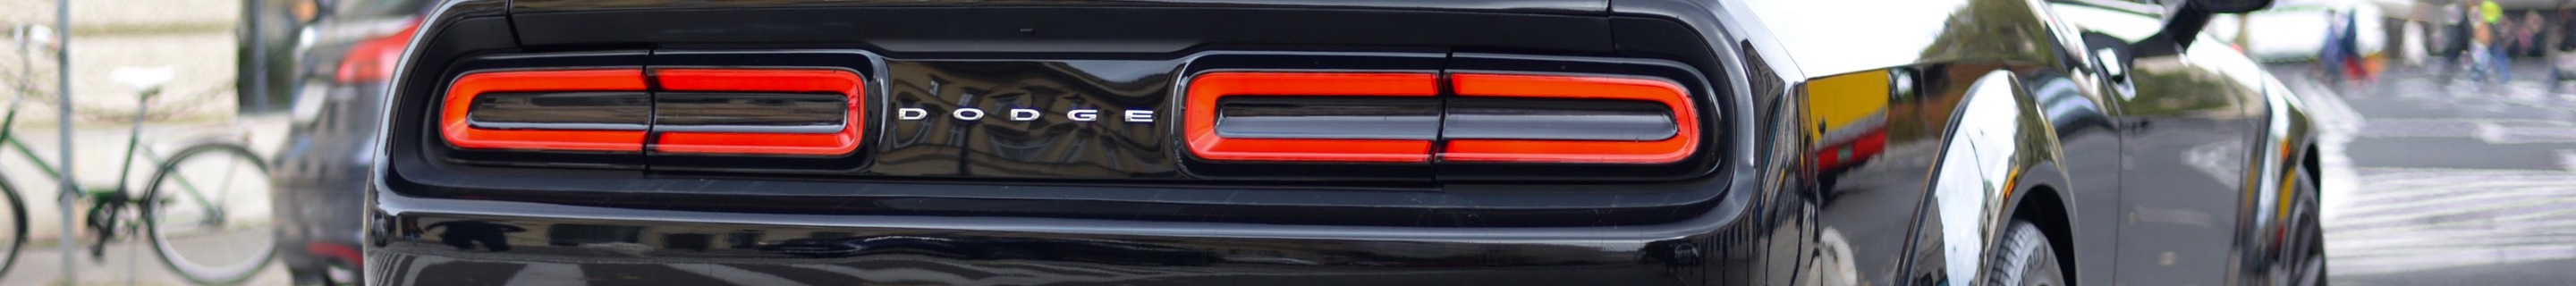 Dodge Challenger SRT Hellcat Widebody